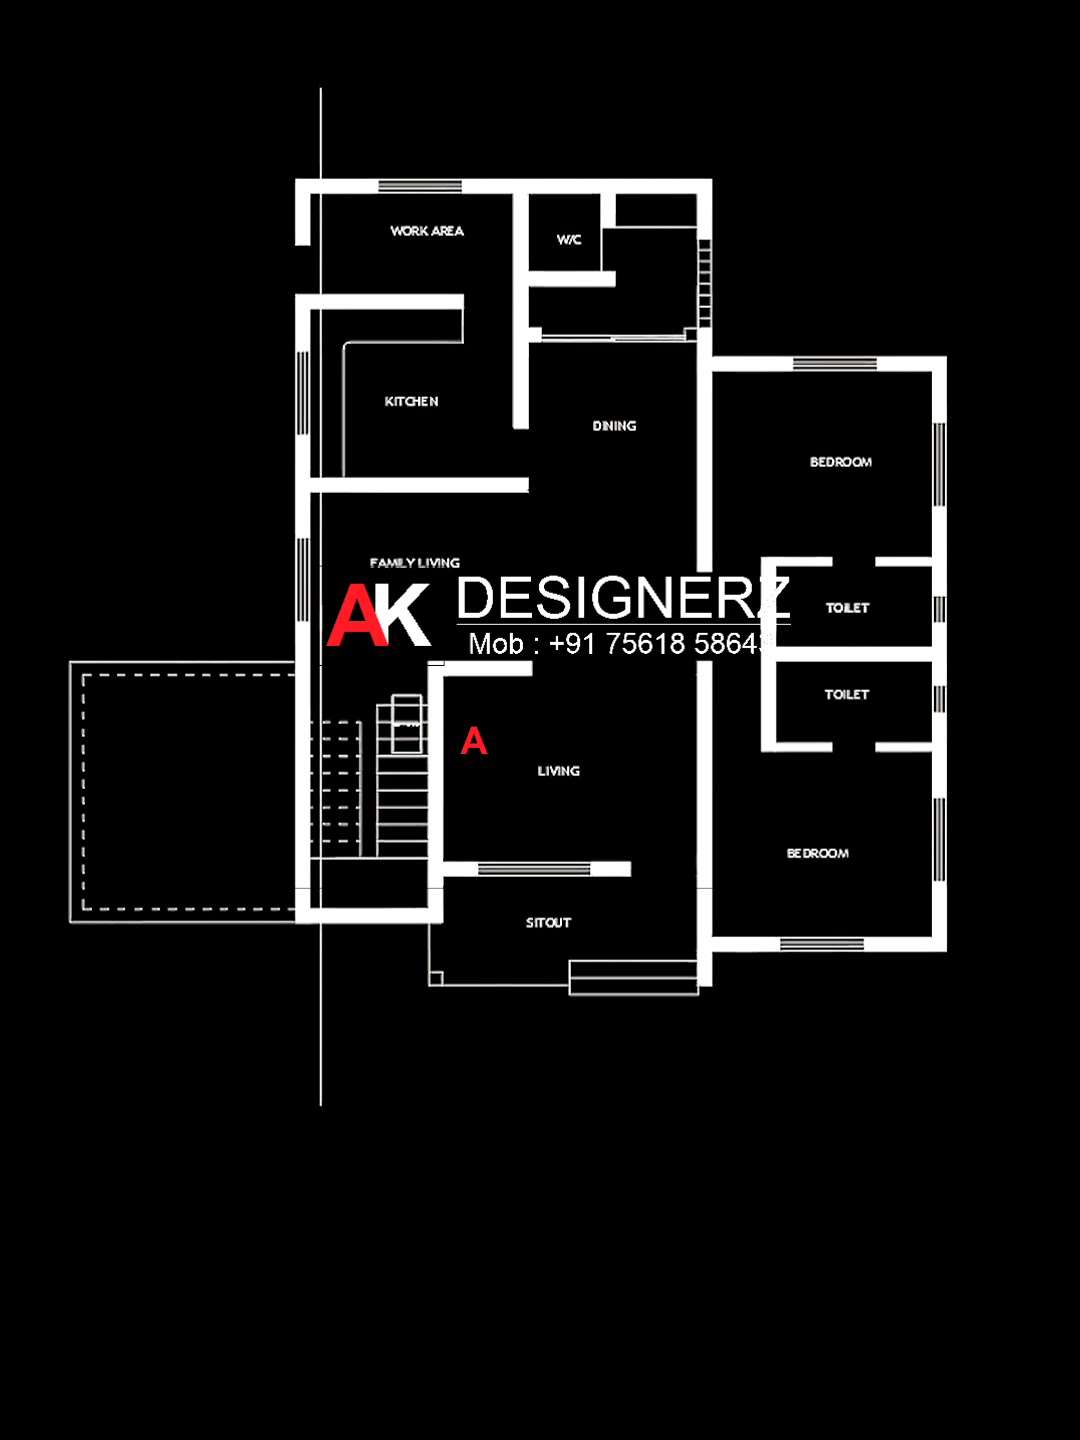 🍂എന്തിനാണ്__3D floor plan??

🍂Home 3D Floor Plan 🍂

📍Dm Us For Any Design @ak_designz____

Contact me on whatsapp
📞7561858643

#designer_767 #house #housedesign #housedesigns #residentionaldesign #homedesign #residentialdesign #residential #civilengineering #autocad #3ddesign #arcdaily #architecture #architecturedesign #architectural #keralahome
#house3d #keralahomes  #budget_home_simple_interi #budjecthomes #budgetplans 
@kolo.kerala @archidesign.kerala @archdaily

#budgethomes #ElevationHome #SmallBudgetRenovation #budgethomeplan #budgethouses #budgetprice
#3Dfloorplans #3Dfloorplans ##